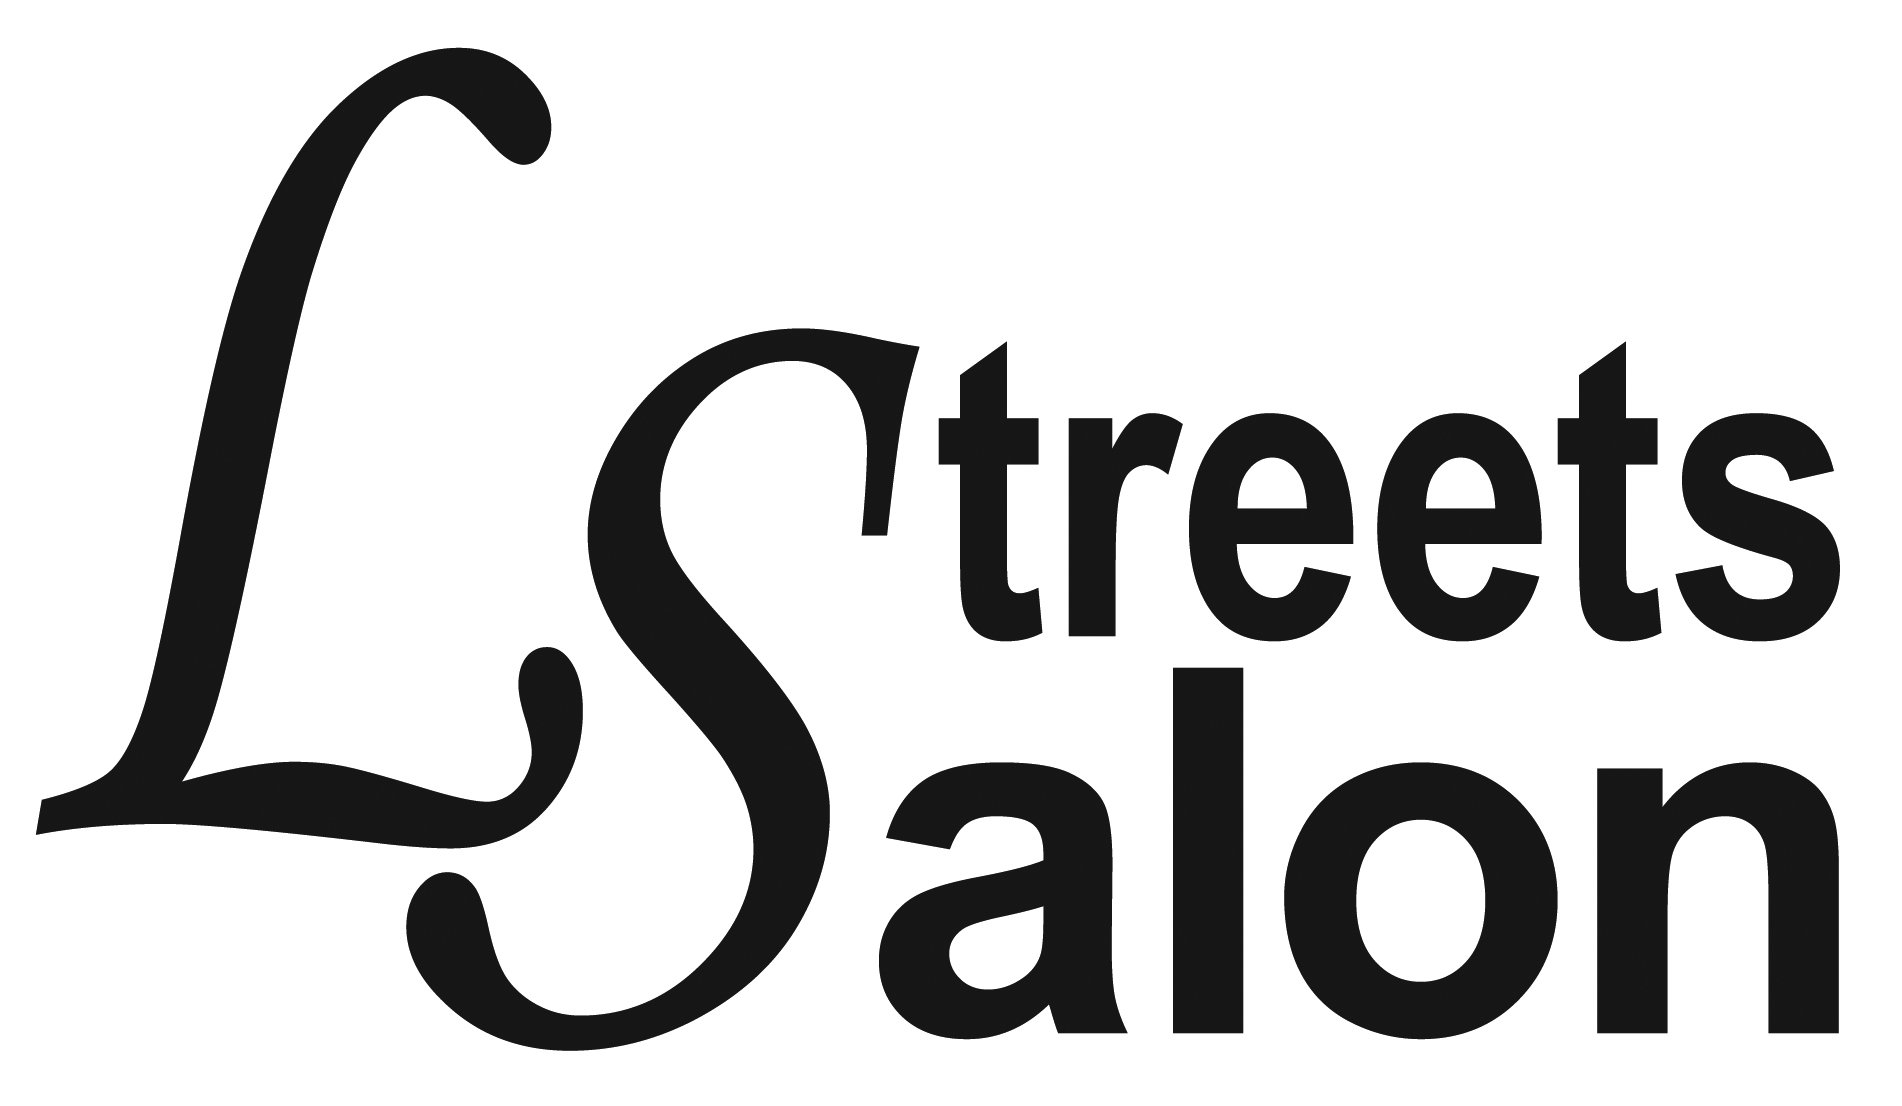 L Streets Salon Ltd